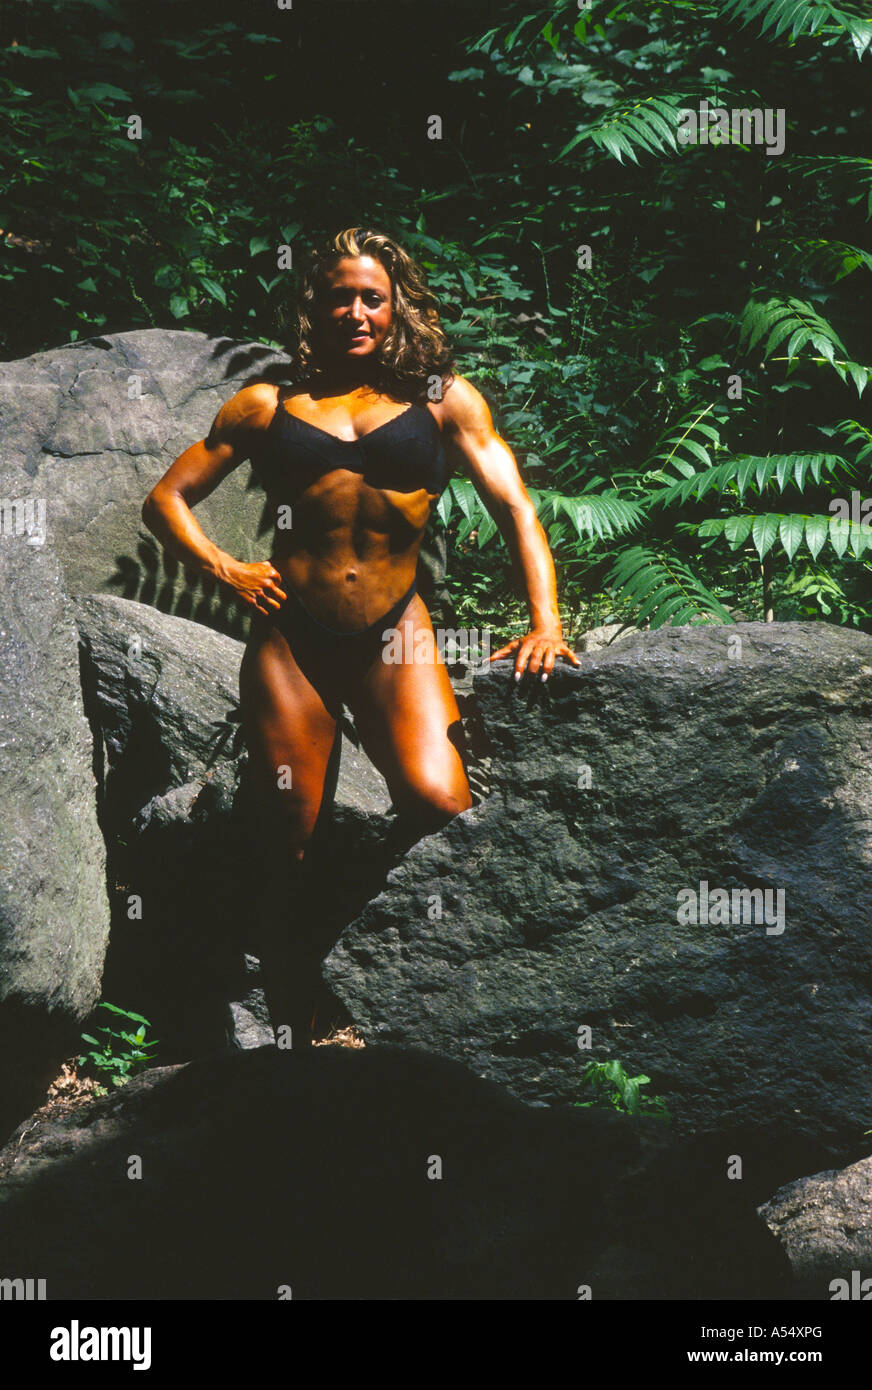 Bodybuilderin posiert in Central Park New York Mujer atletica Stockfoto